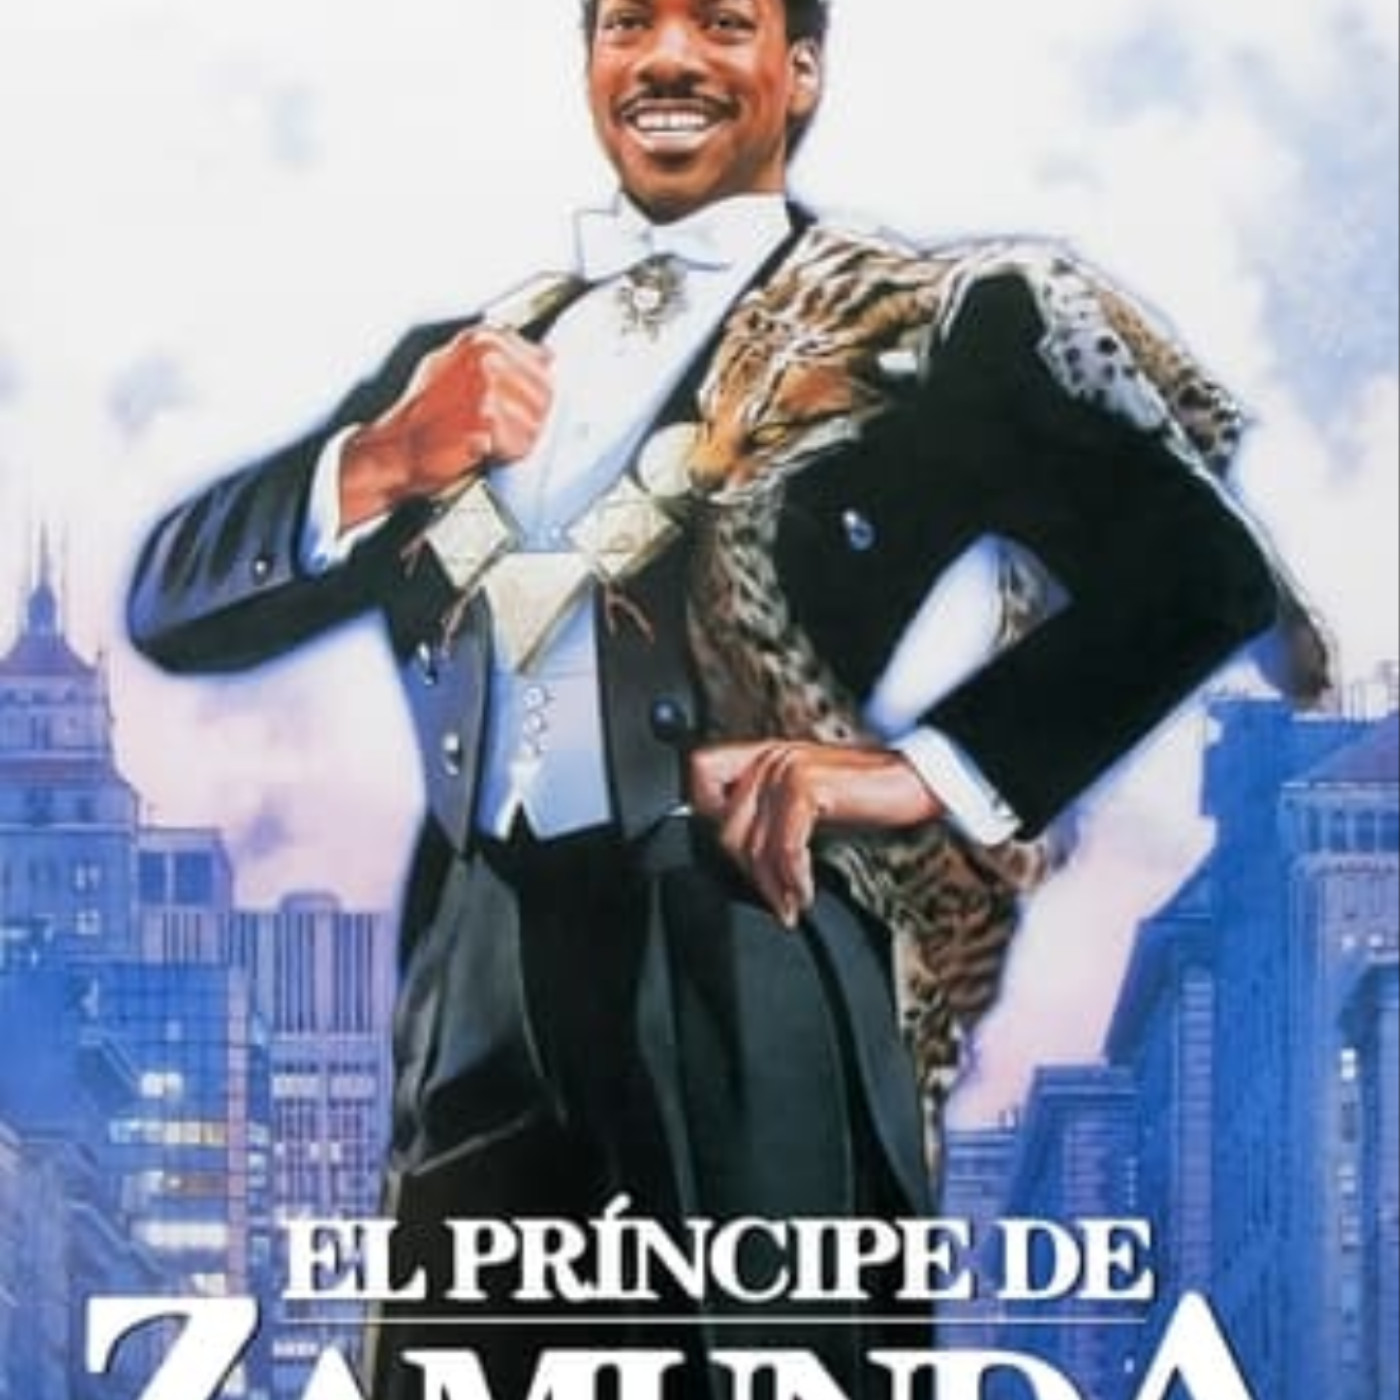 OPENLOAD] El príncipe de Zamunda pelicula completa en español gratis  Estrenos | Podcast on SoundOn